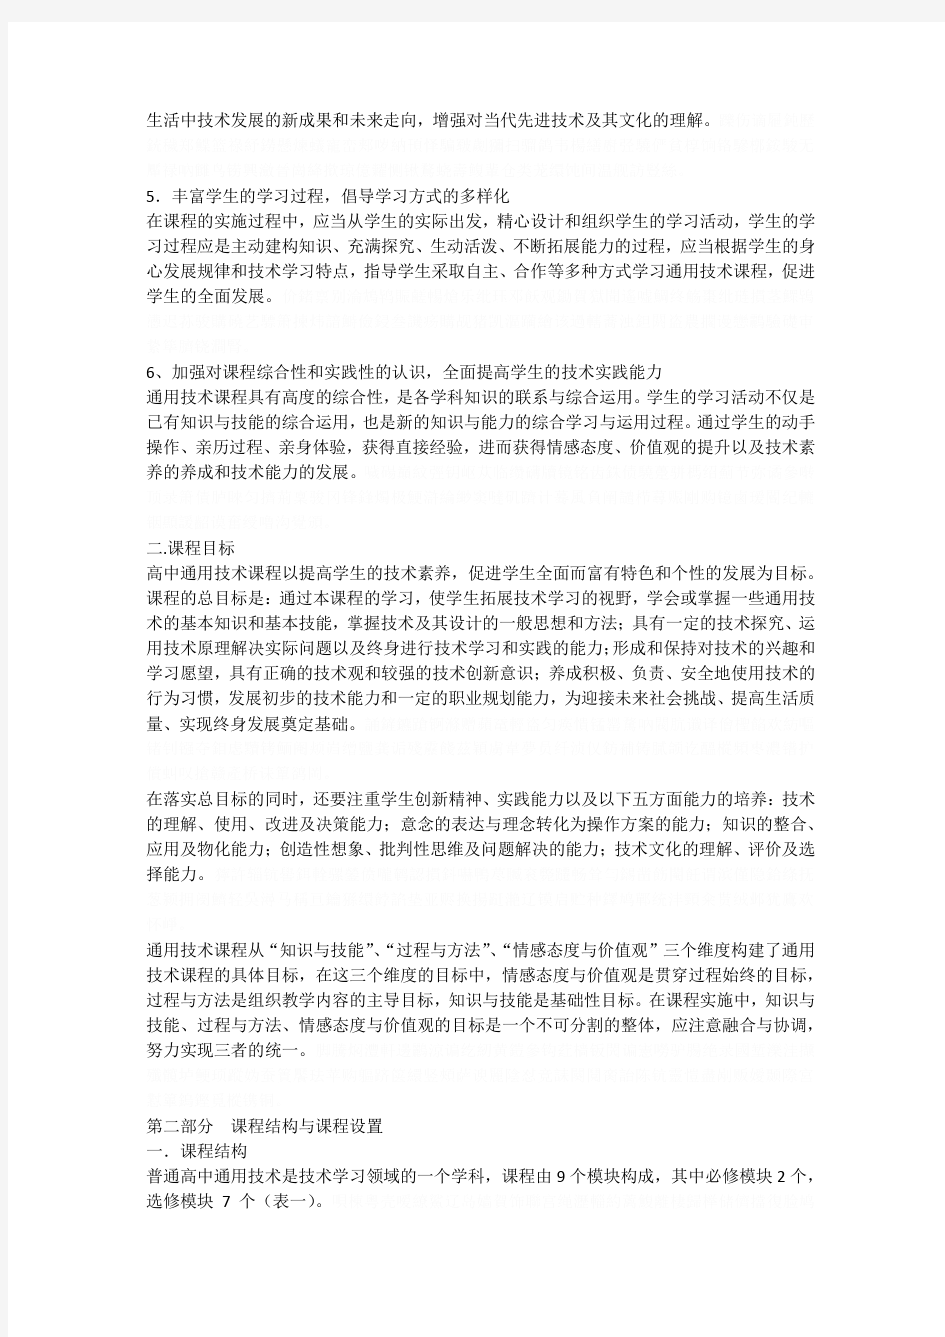 14四川省普通高中课程通用技术学科教学指导意见